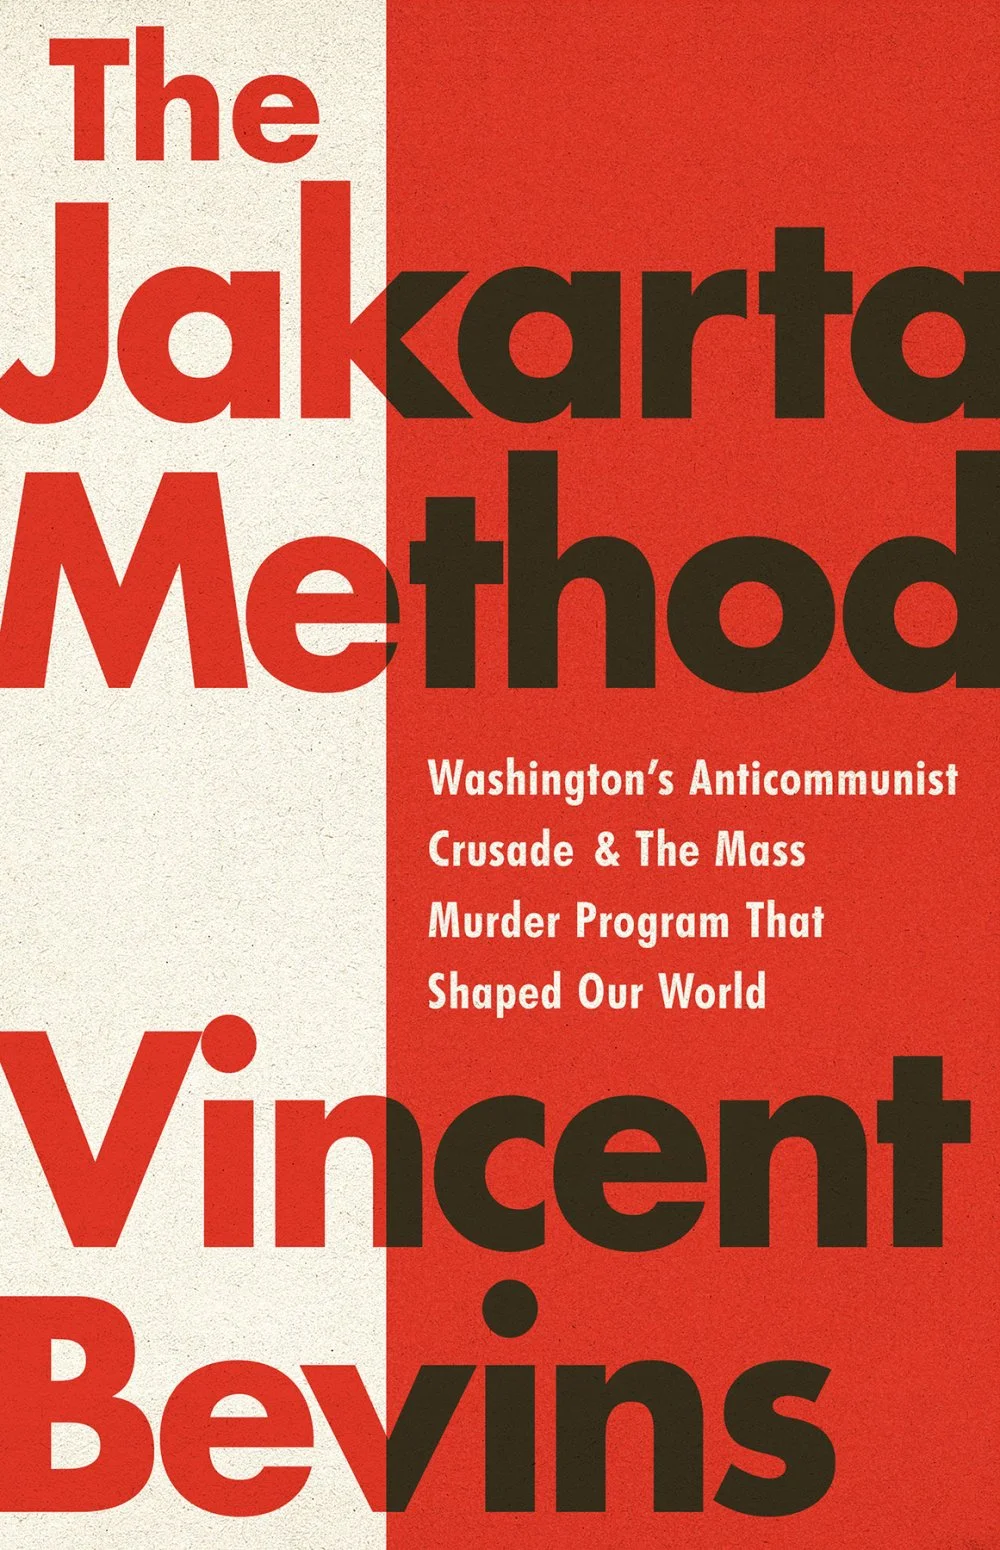 Обложка англоязычного издания «Метода Джакарты»